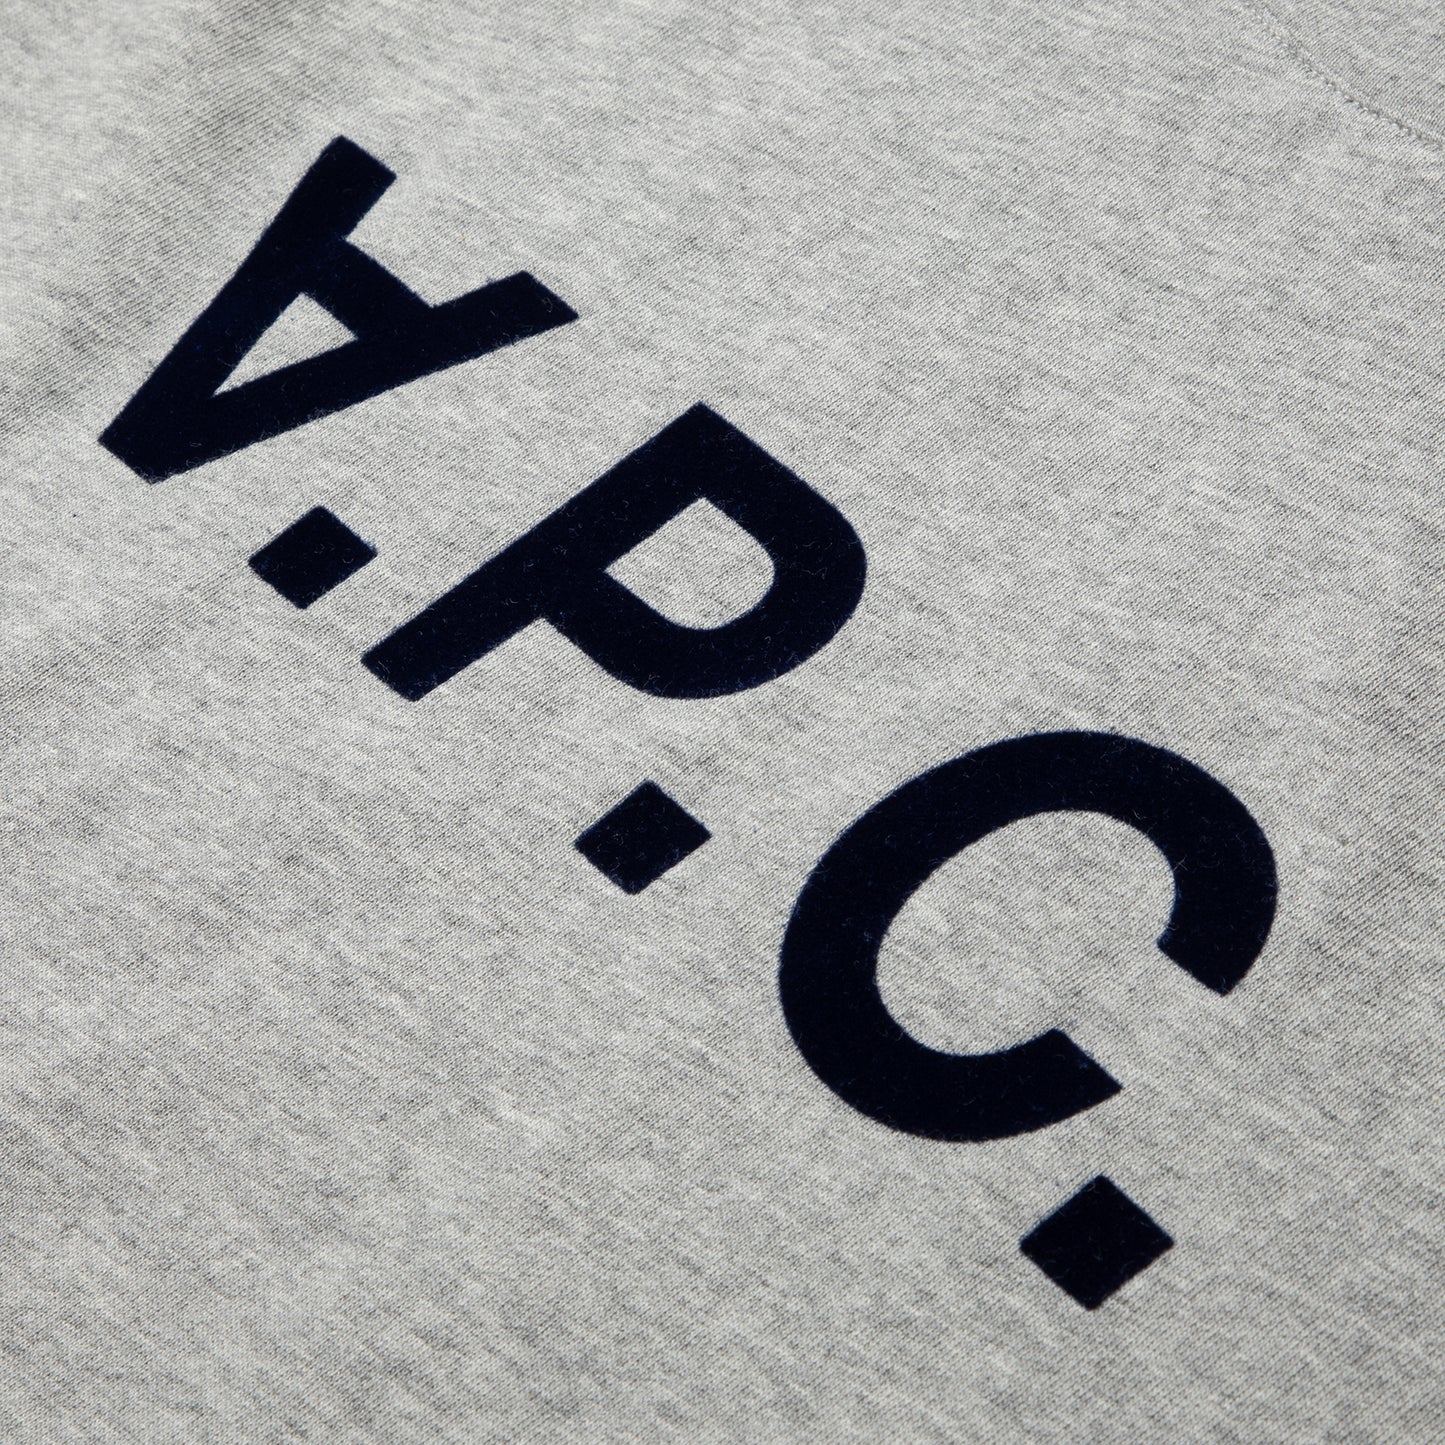 A.P.C. T-Shirt VPC Color H (Gris)